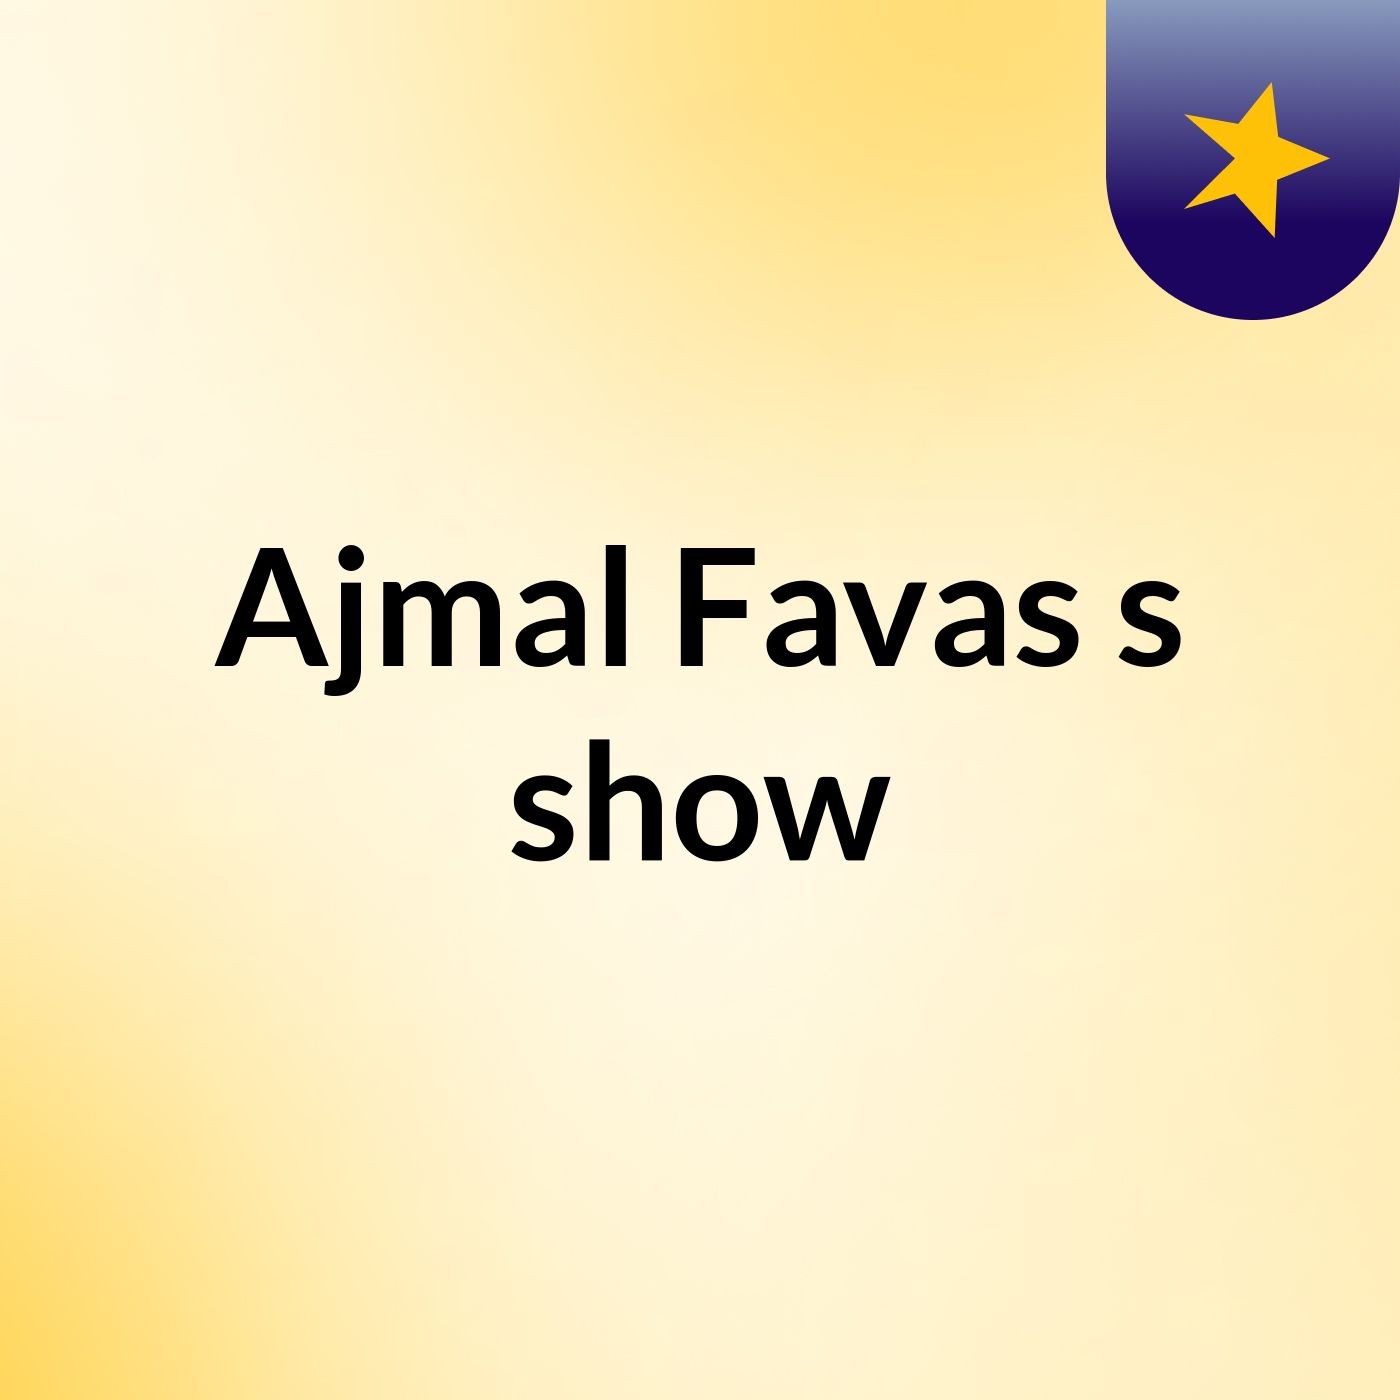 Ajmal Favas's show